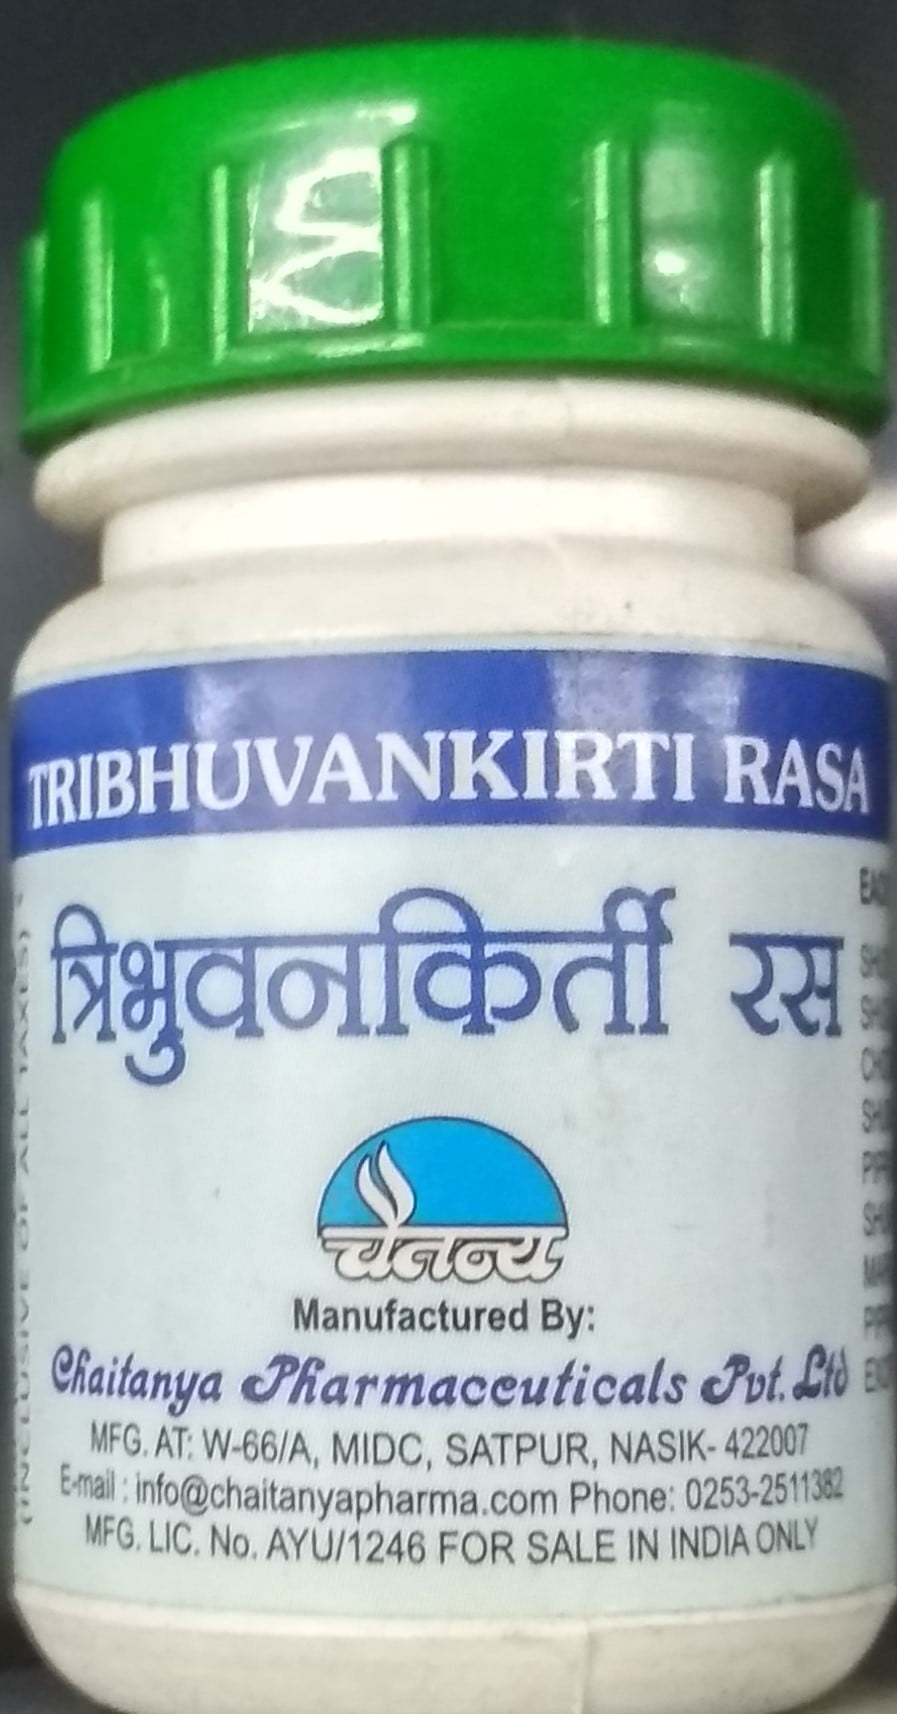 tribhuvankirti rasa 1000tab upto 20% off free shipping chaitanya pharmaceuticals